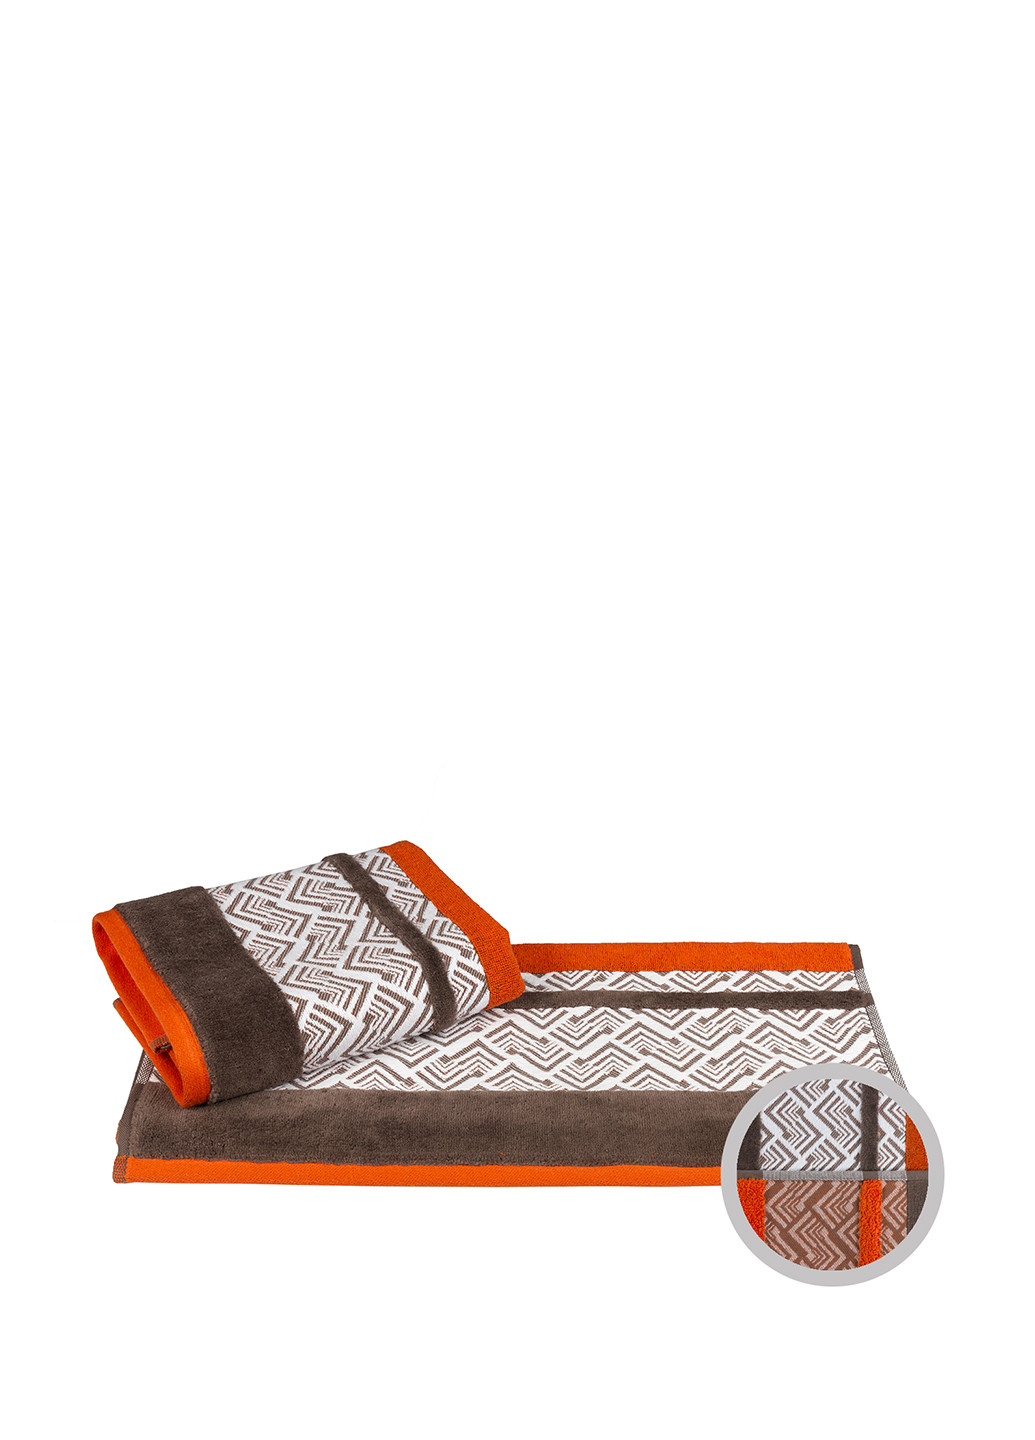 Hobby полотенце, 50х90 см геометрический оранжевый производство - Турция